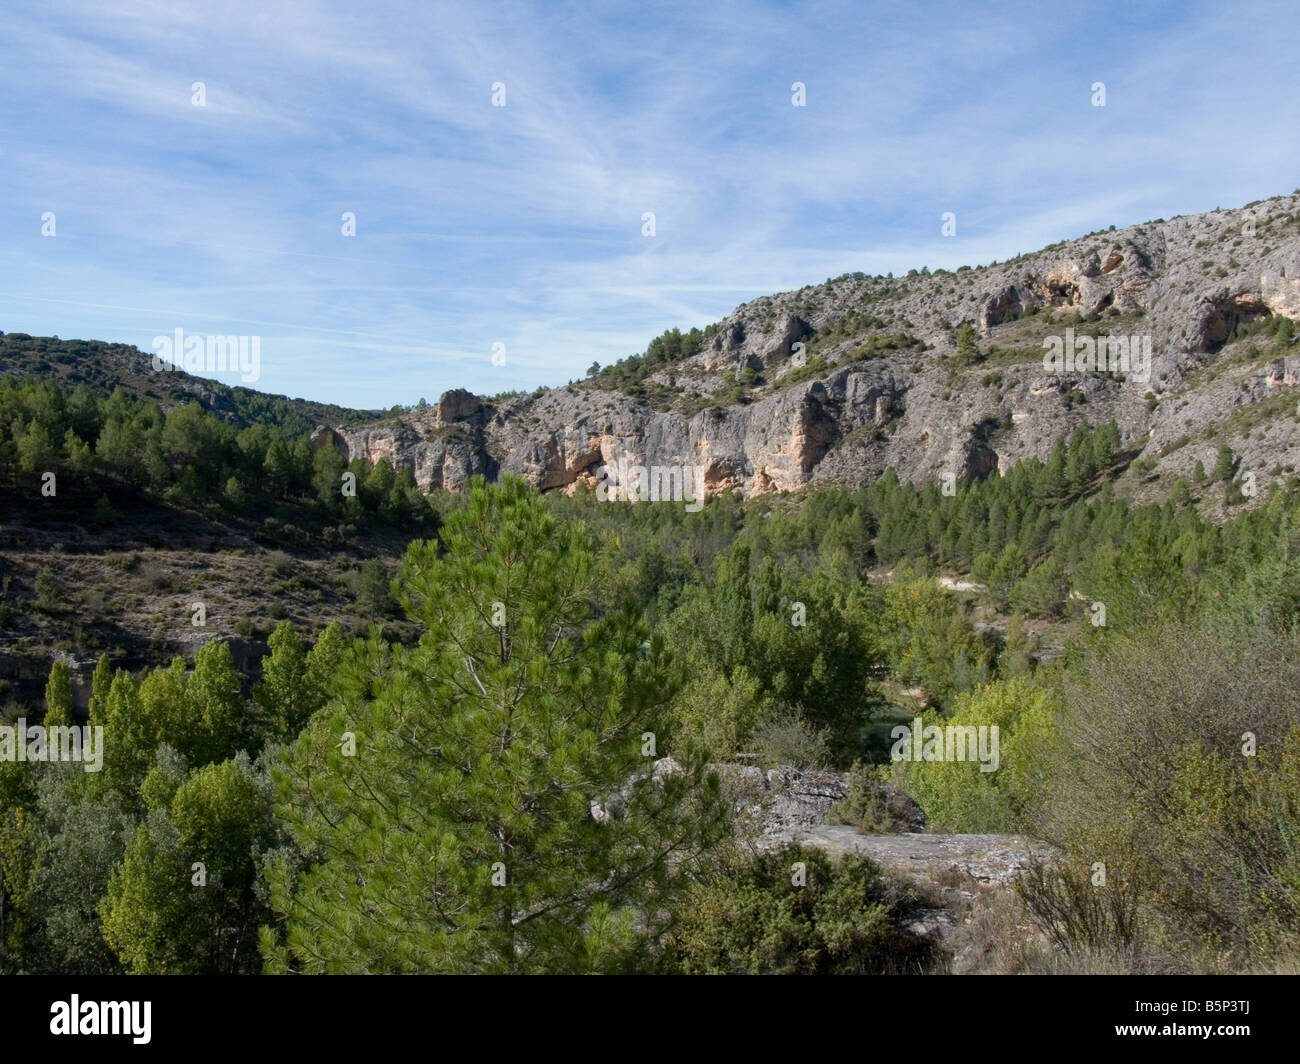 La Serrania, La sierra de Cuenca. Spain Stock Photo - Alamy